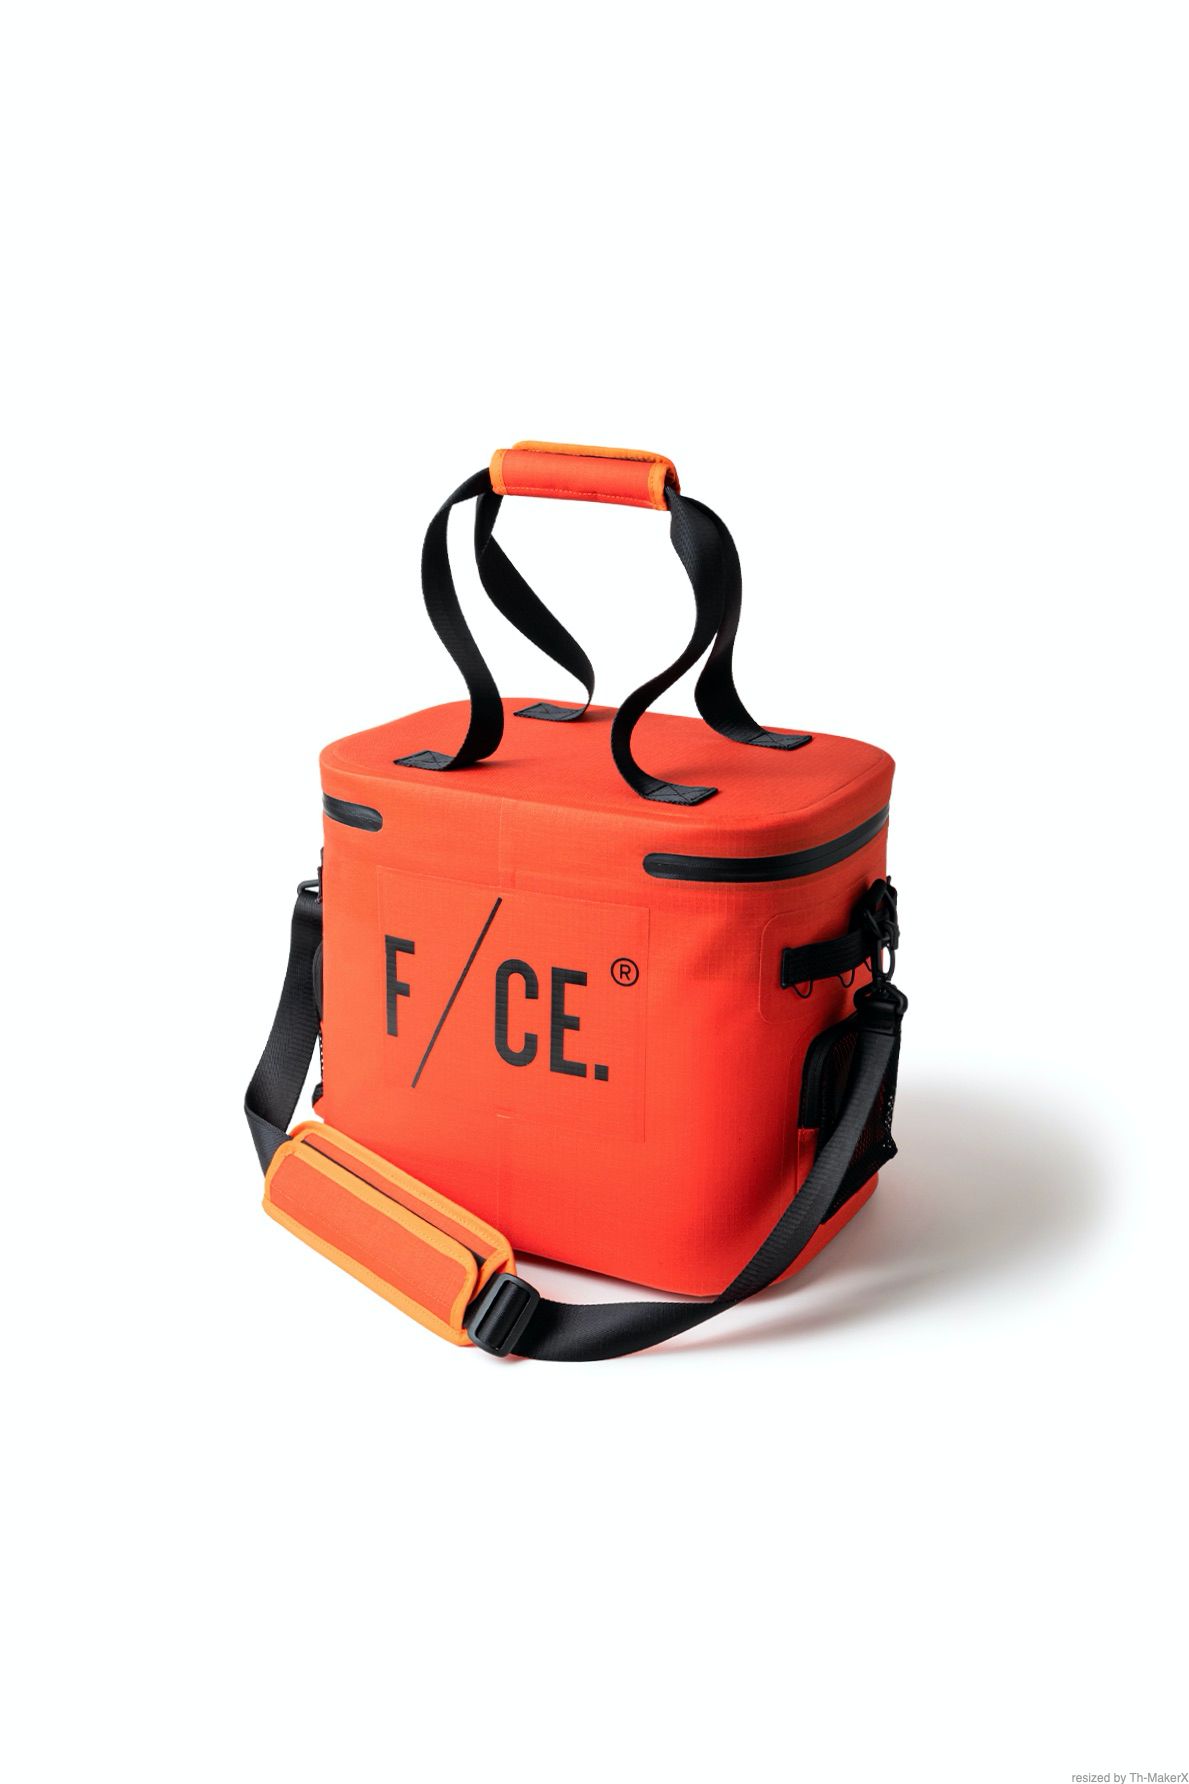 【予約商品】tightbooth x f/ce. cooler container -orange- 22aw 9月10日全国一斉発売 - F